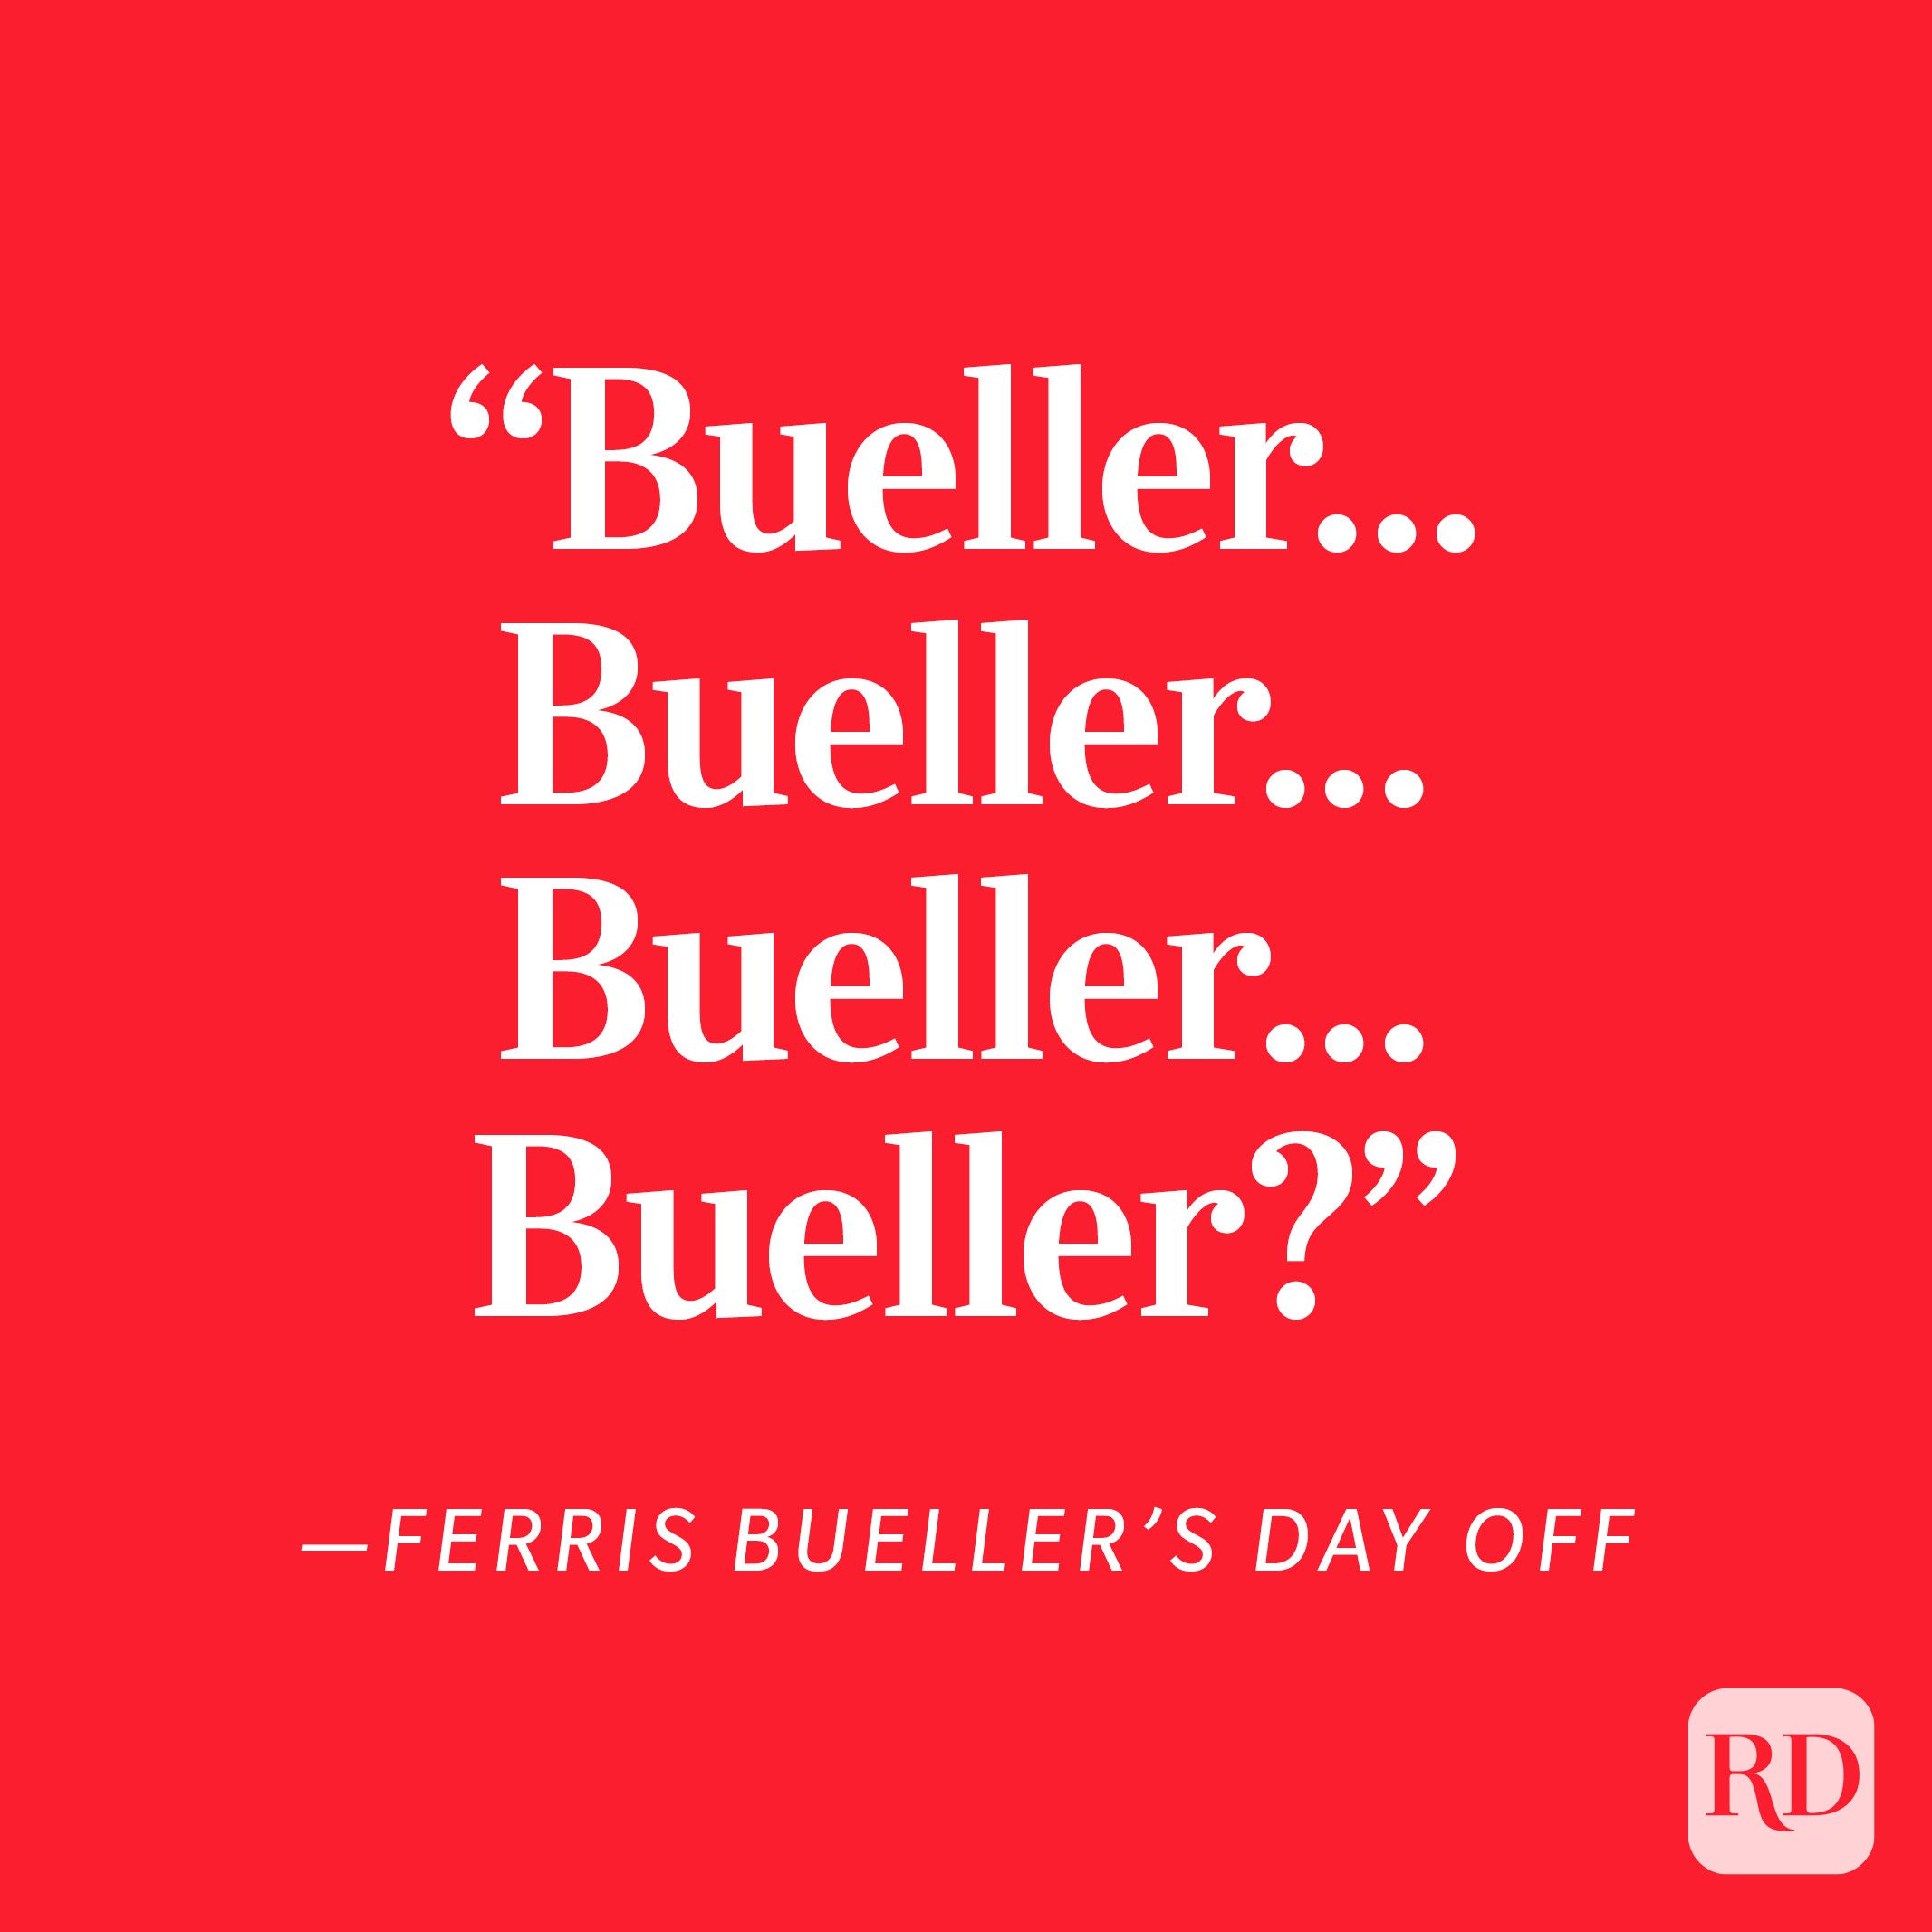 Ferris Bueller's Day Off "Bueller . . . Bueller . . . Bueller . . . Bueller?"